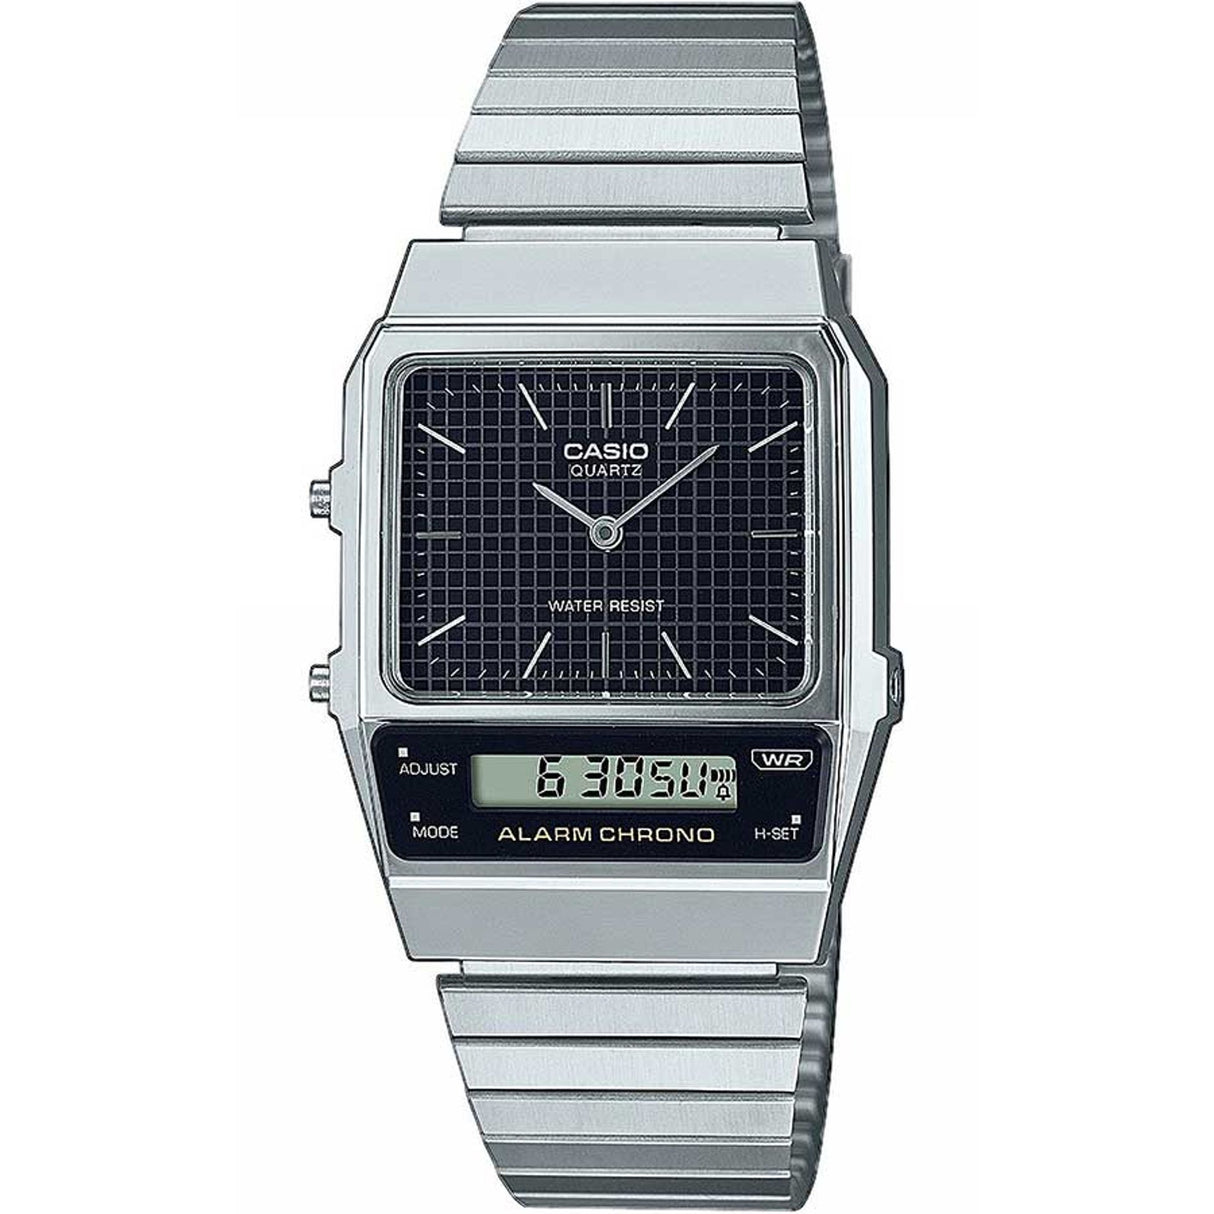 Unisex watch Analog-digital watch Dual display watch Stainless steel strap watch Plastic case watch Deployment clasp watch 32mm watch Quartz watch Gift watch Unique watch